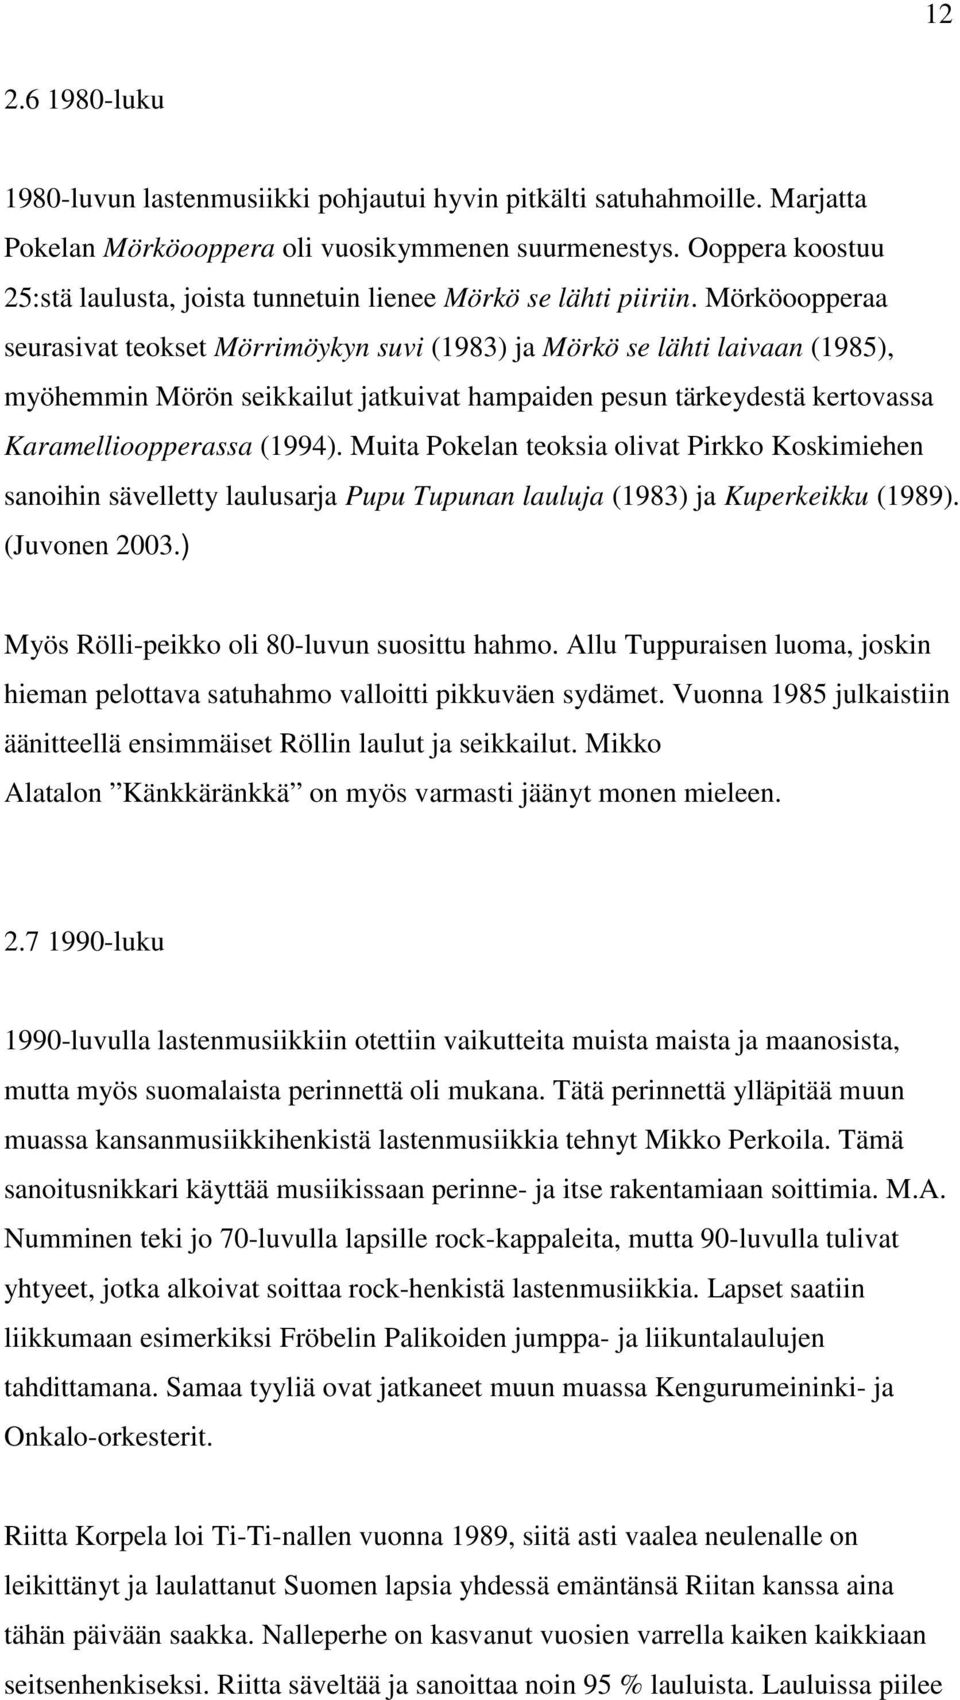 Mörköoopperaa seurasivat teokset Mörrimöykyn suvi (1983) ja Mörkö se lähti laivaan (1985), myöhemmin Mörön seikkailut jatkuivat hampaiden pesun tärkeydestä kertovassa Karamellioopperassa (1994).